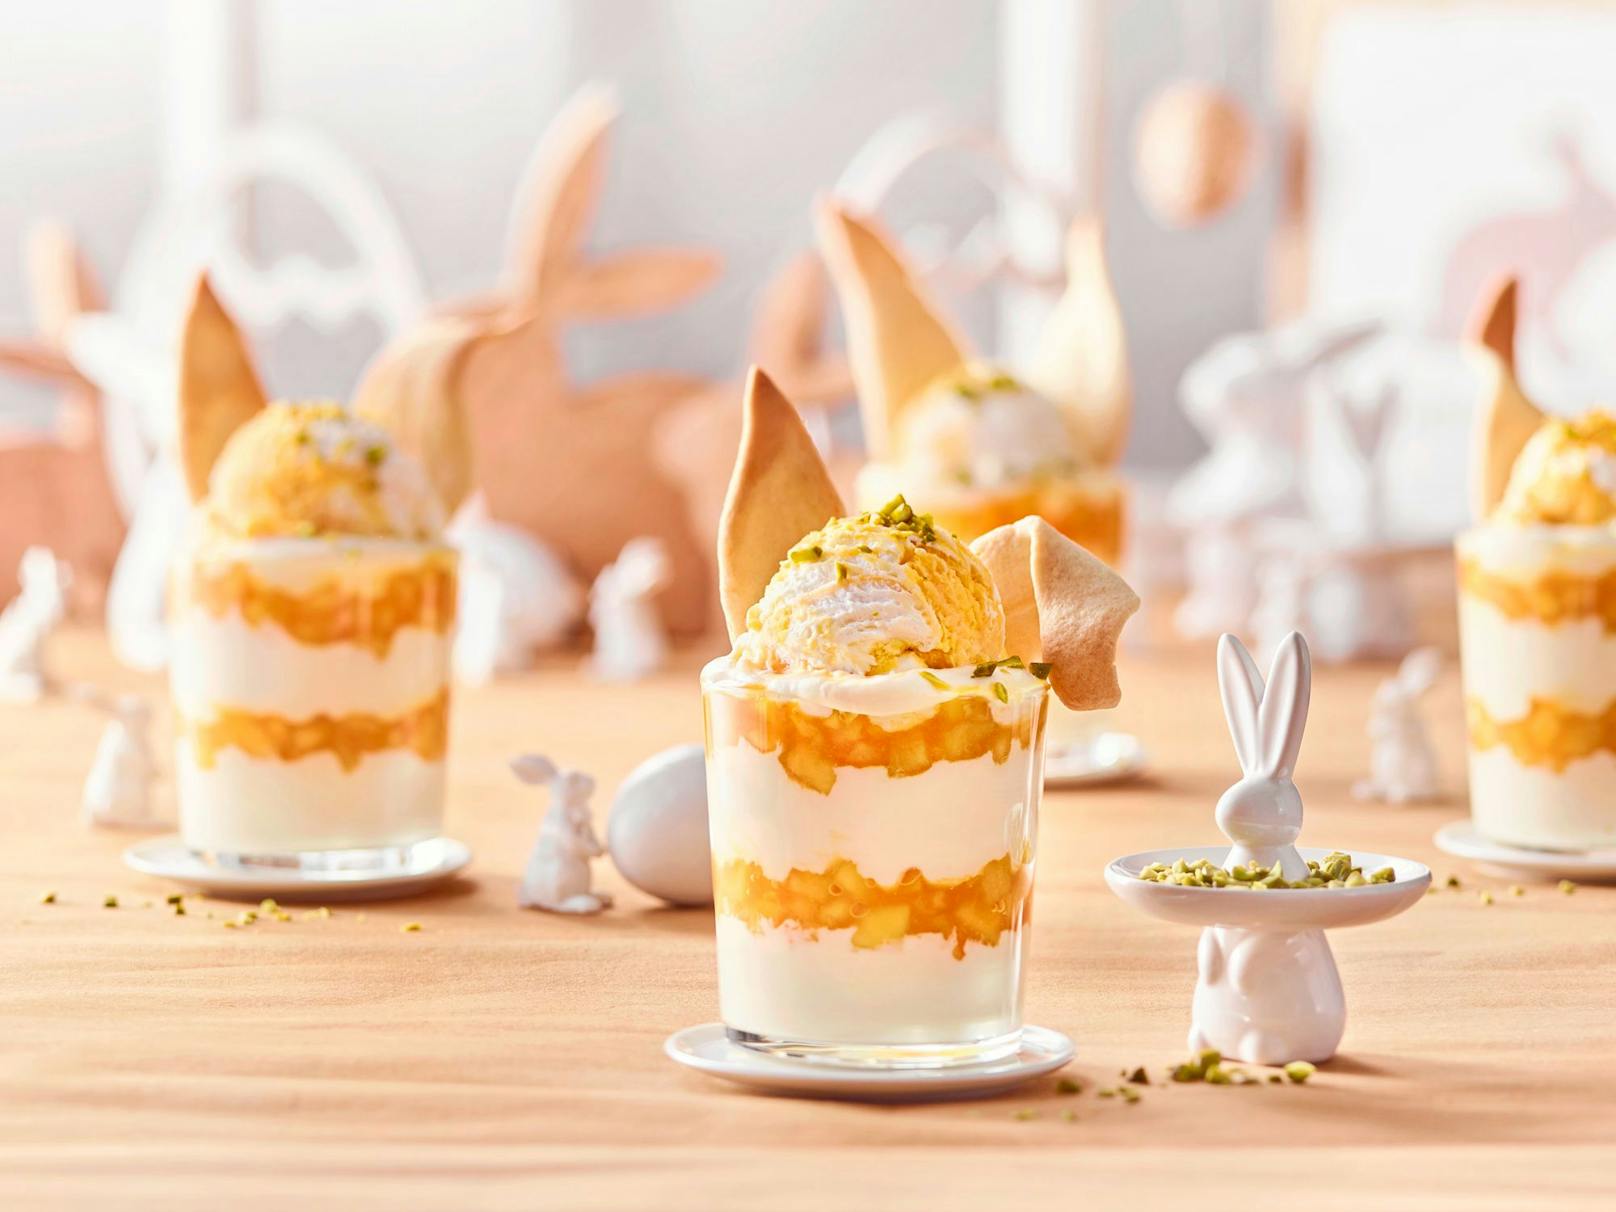 Fruchtig-frisches Oster-Schicht-Dessert mit der neuen Eissorte "Mango-Maracuja Joghurt" von Cremissimo.